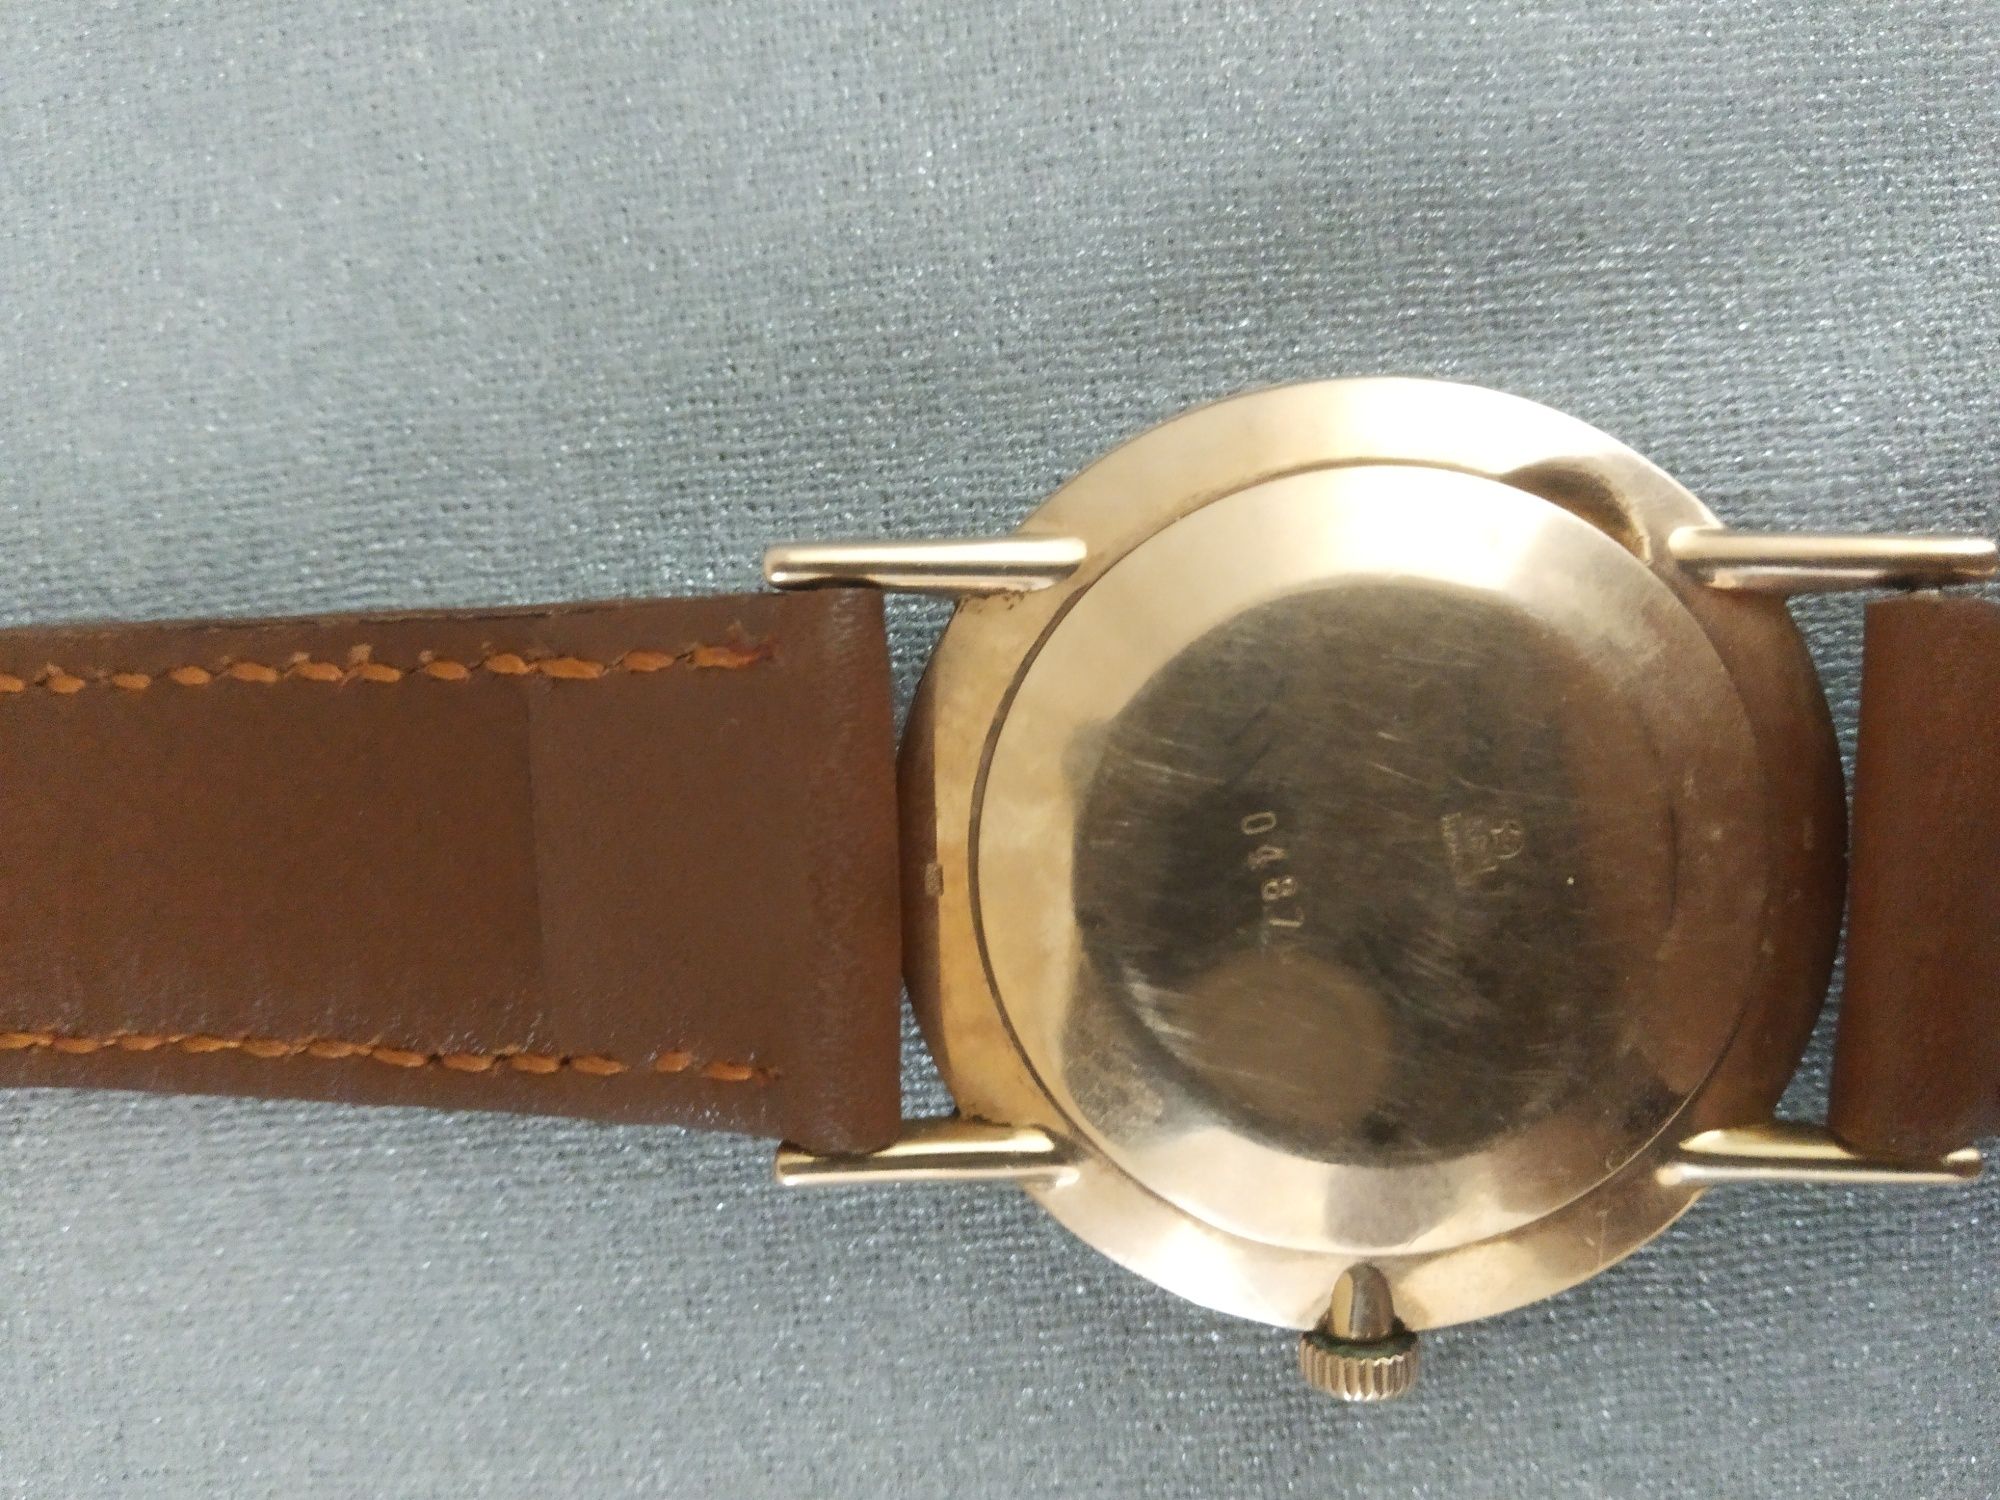 Срочно редкие золотые часы Вымпел 1963 г.